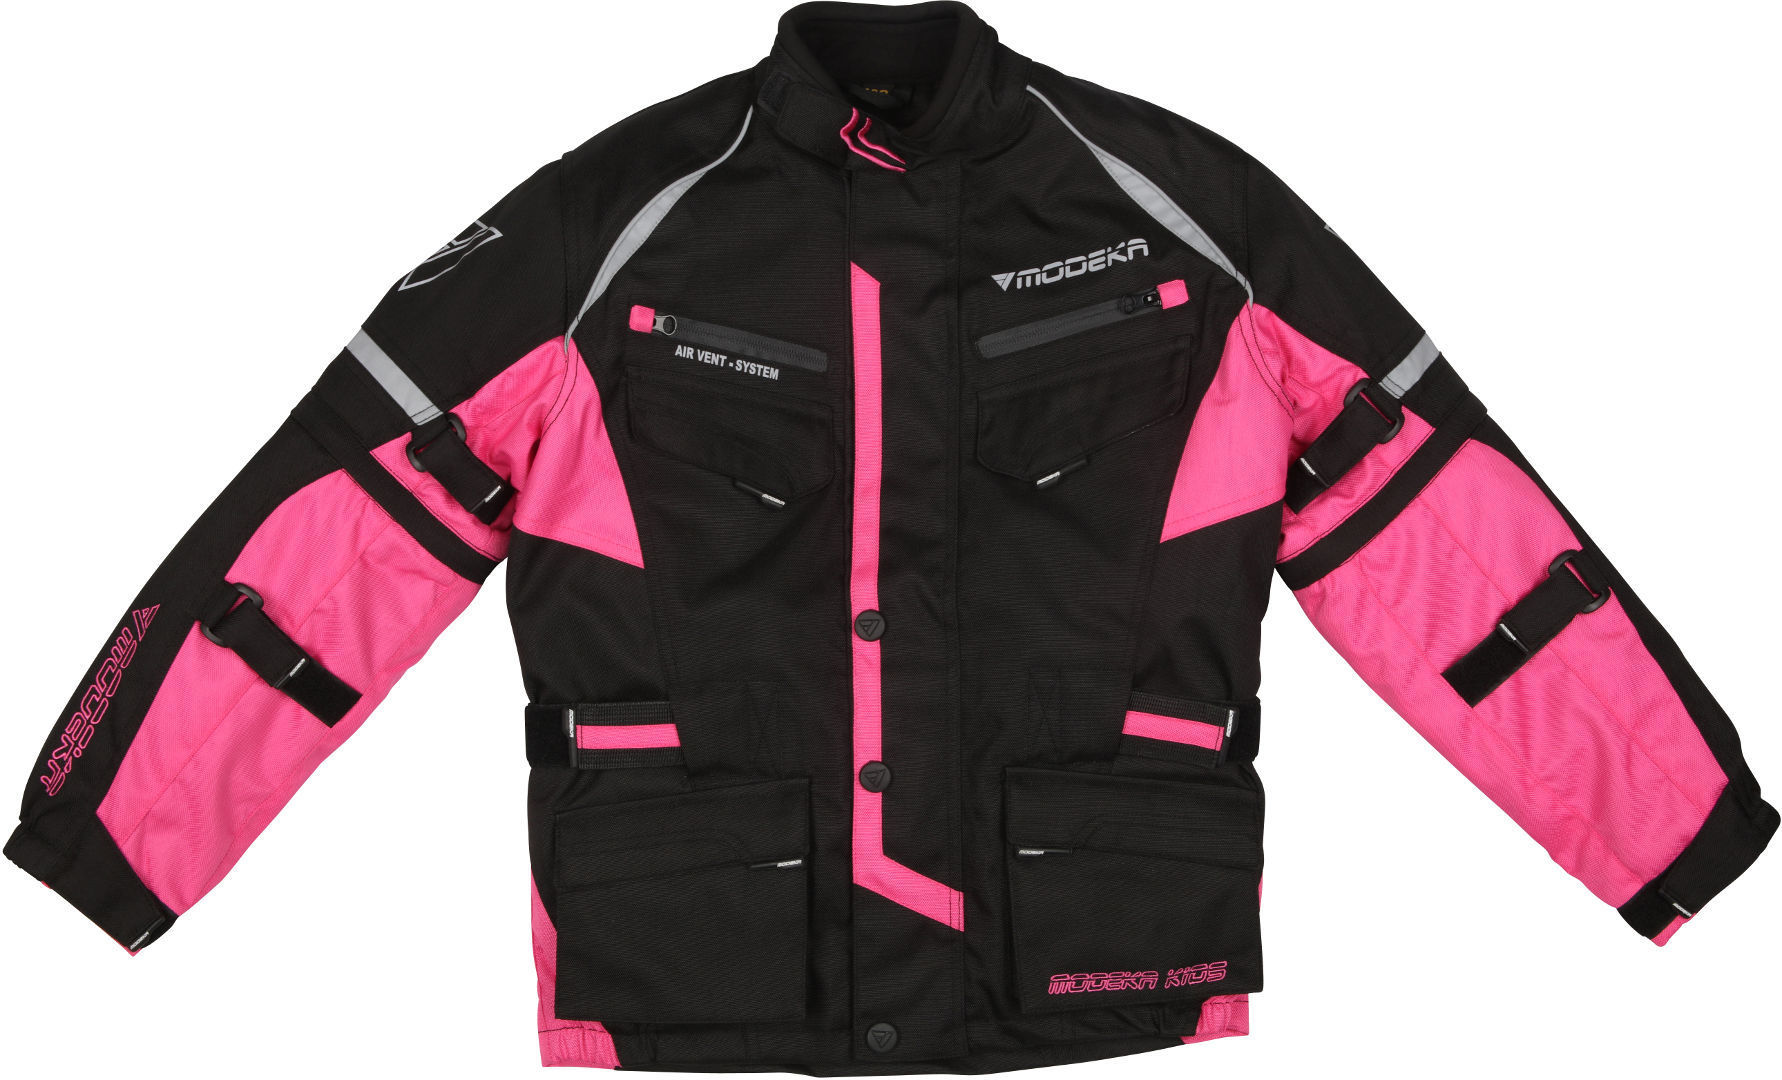 Modeka Tourex II Chaqueta textil para niños para motocicletas - Negro Rosa (S 152)